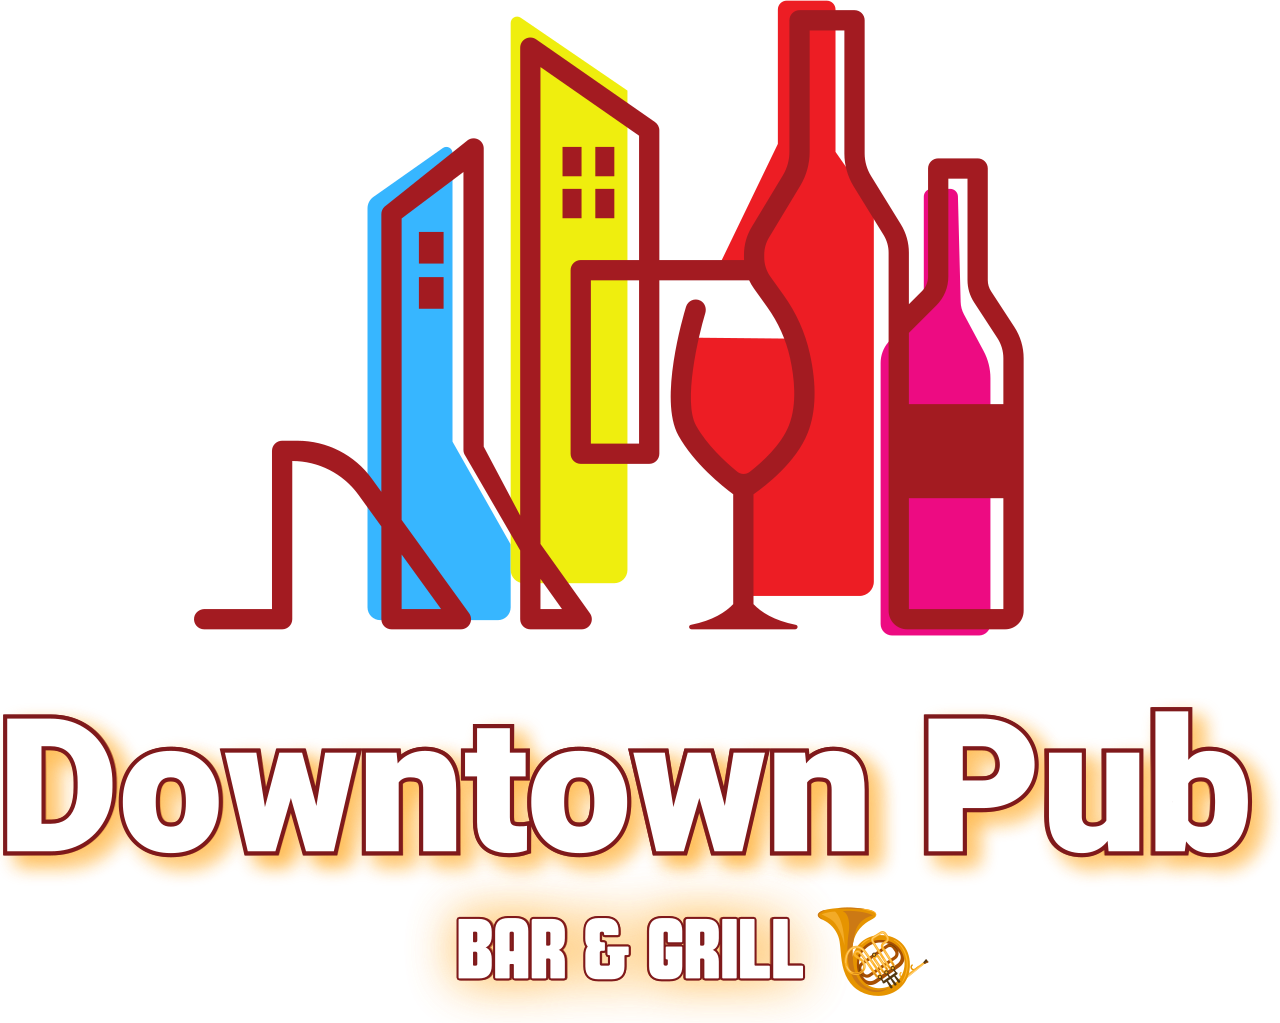 Downtown Pub's logo